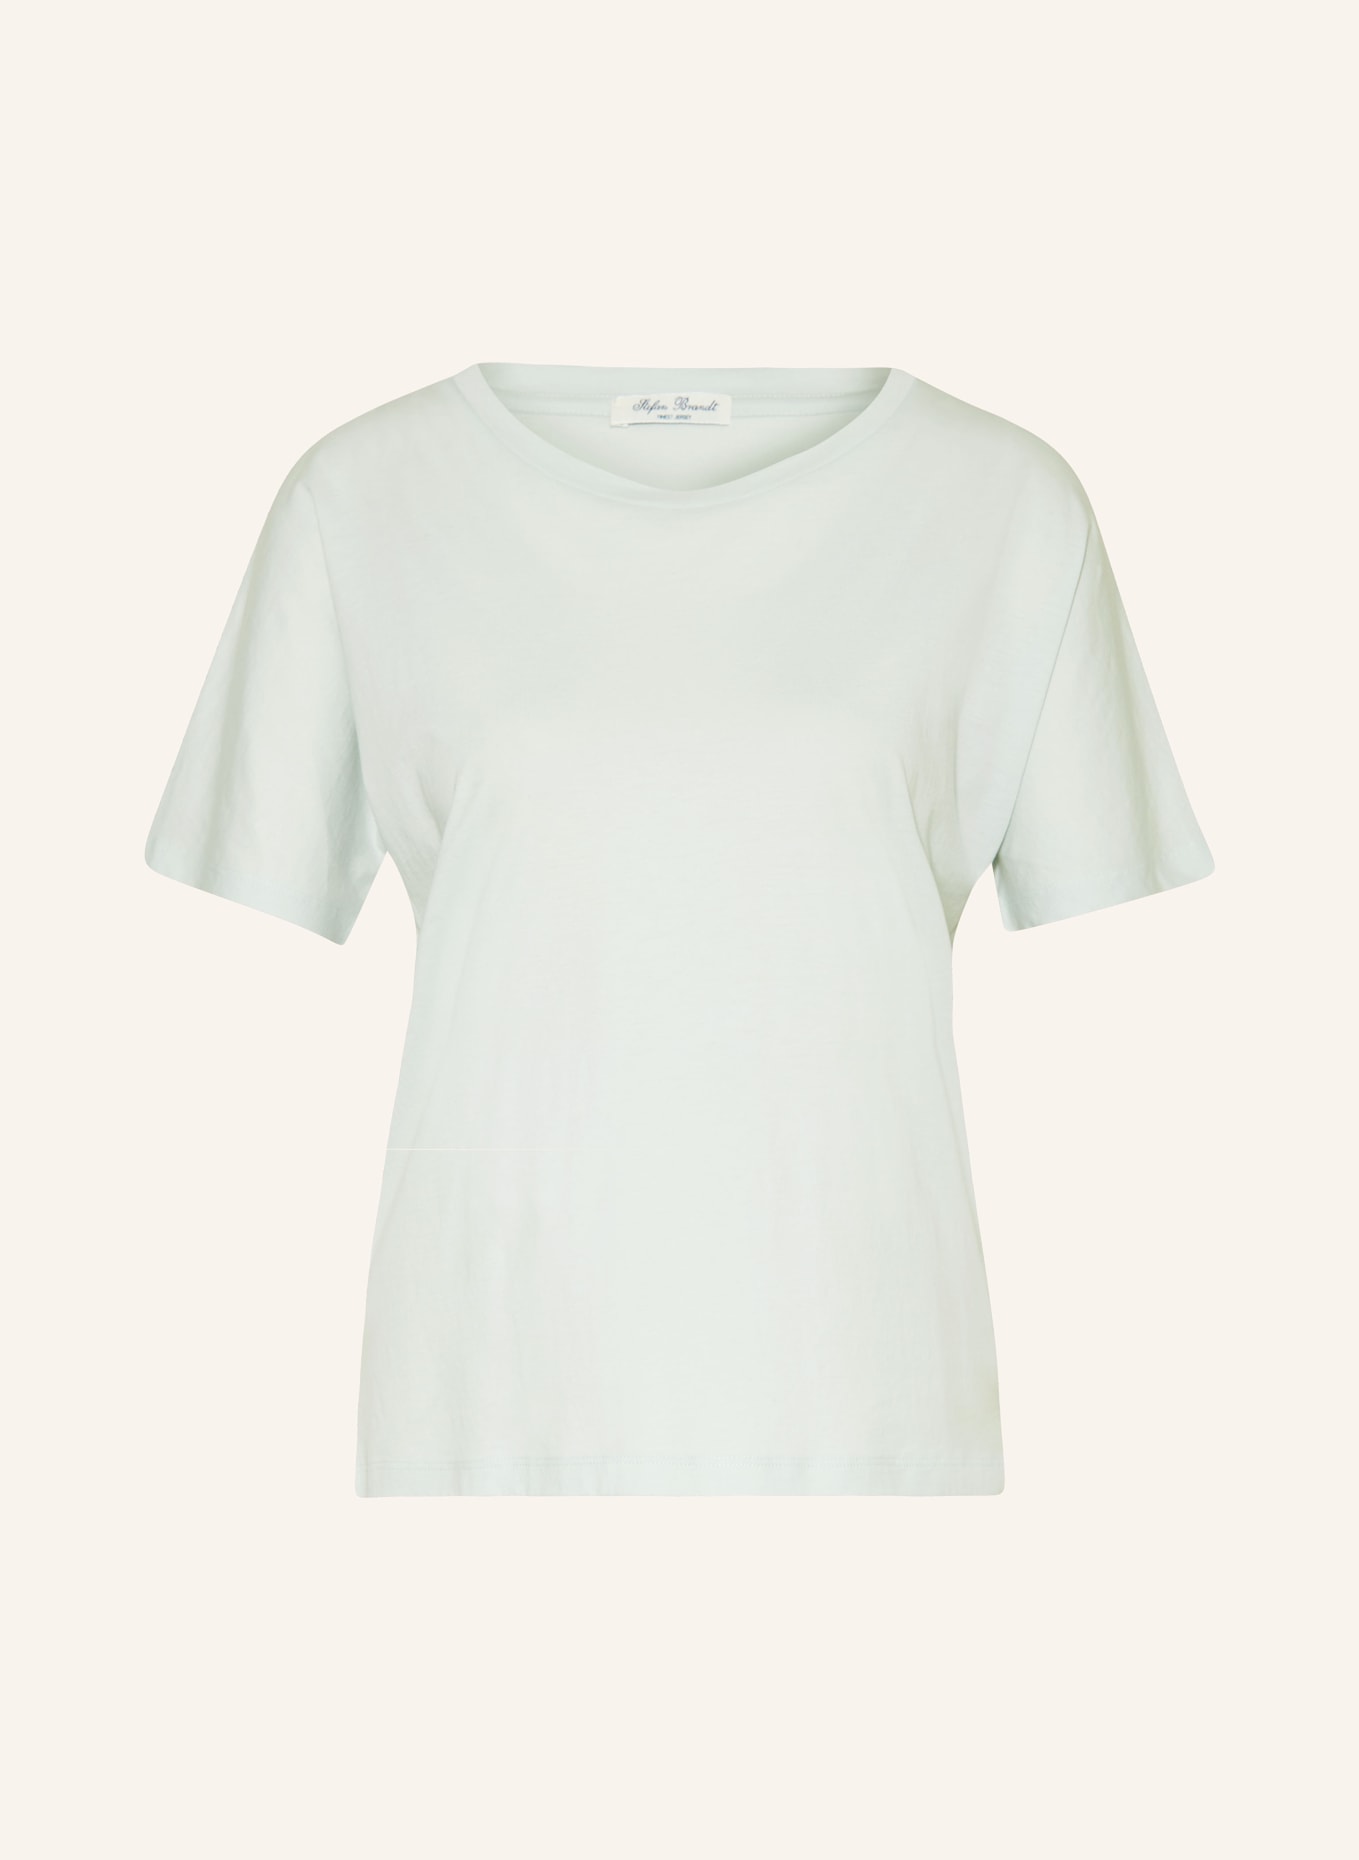 Stefan Brandt T-Shirt FABIA 50, Farbe: MINT (Bild 1)